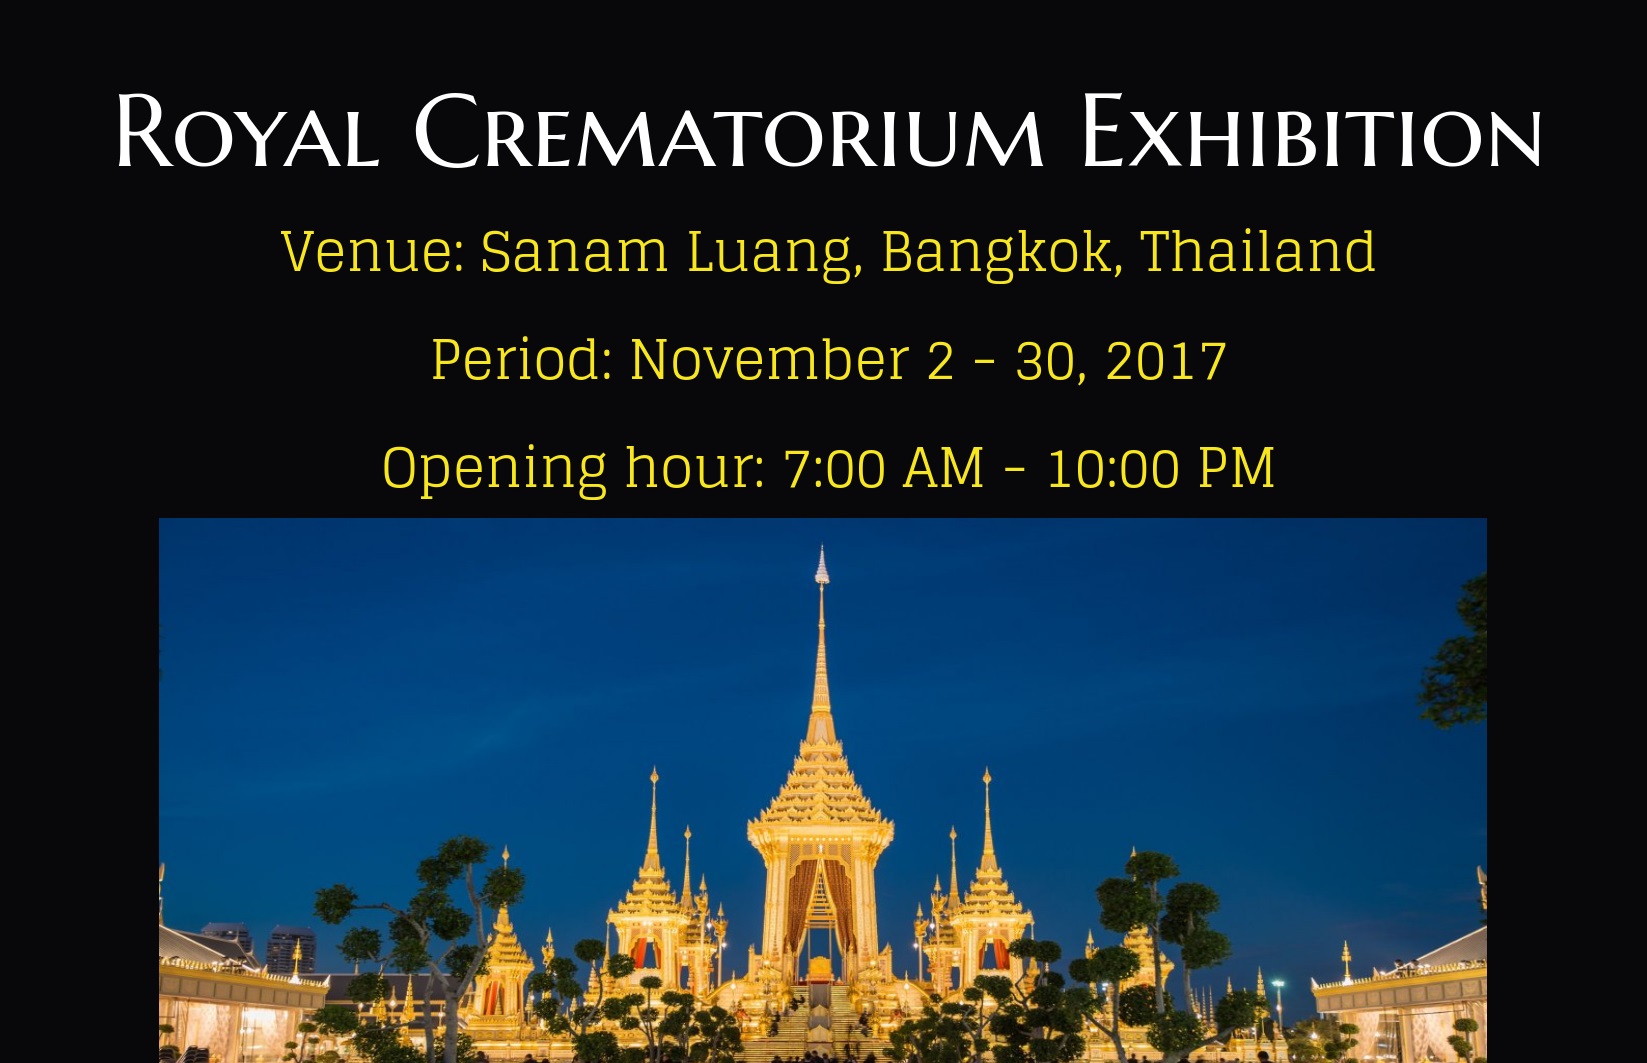 The Royal Crematorium Exhibition